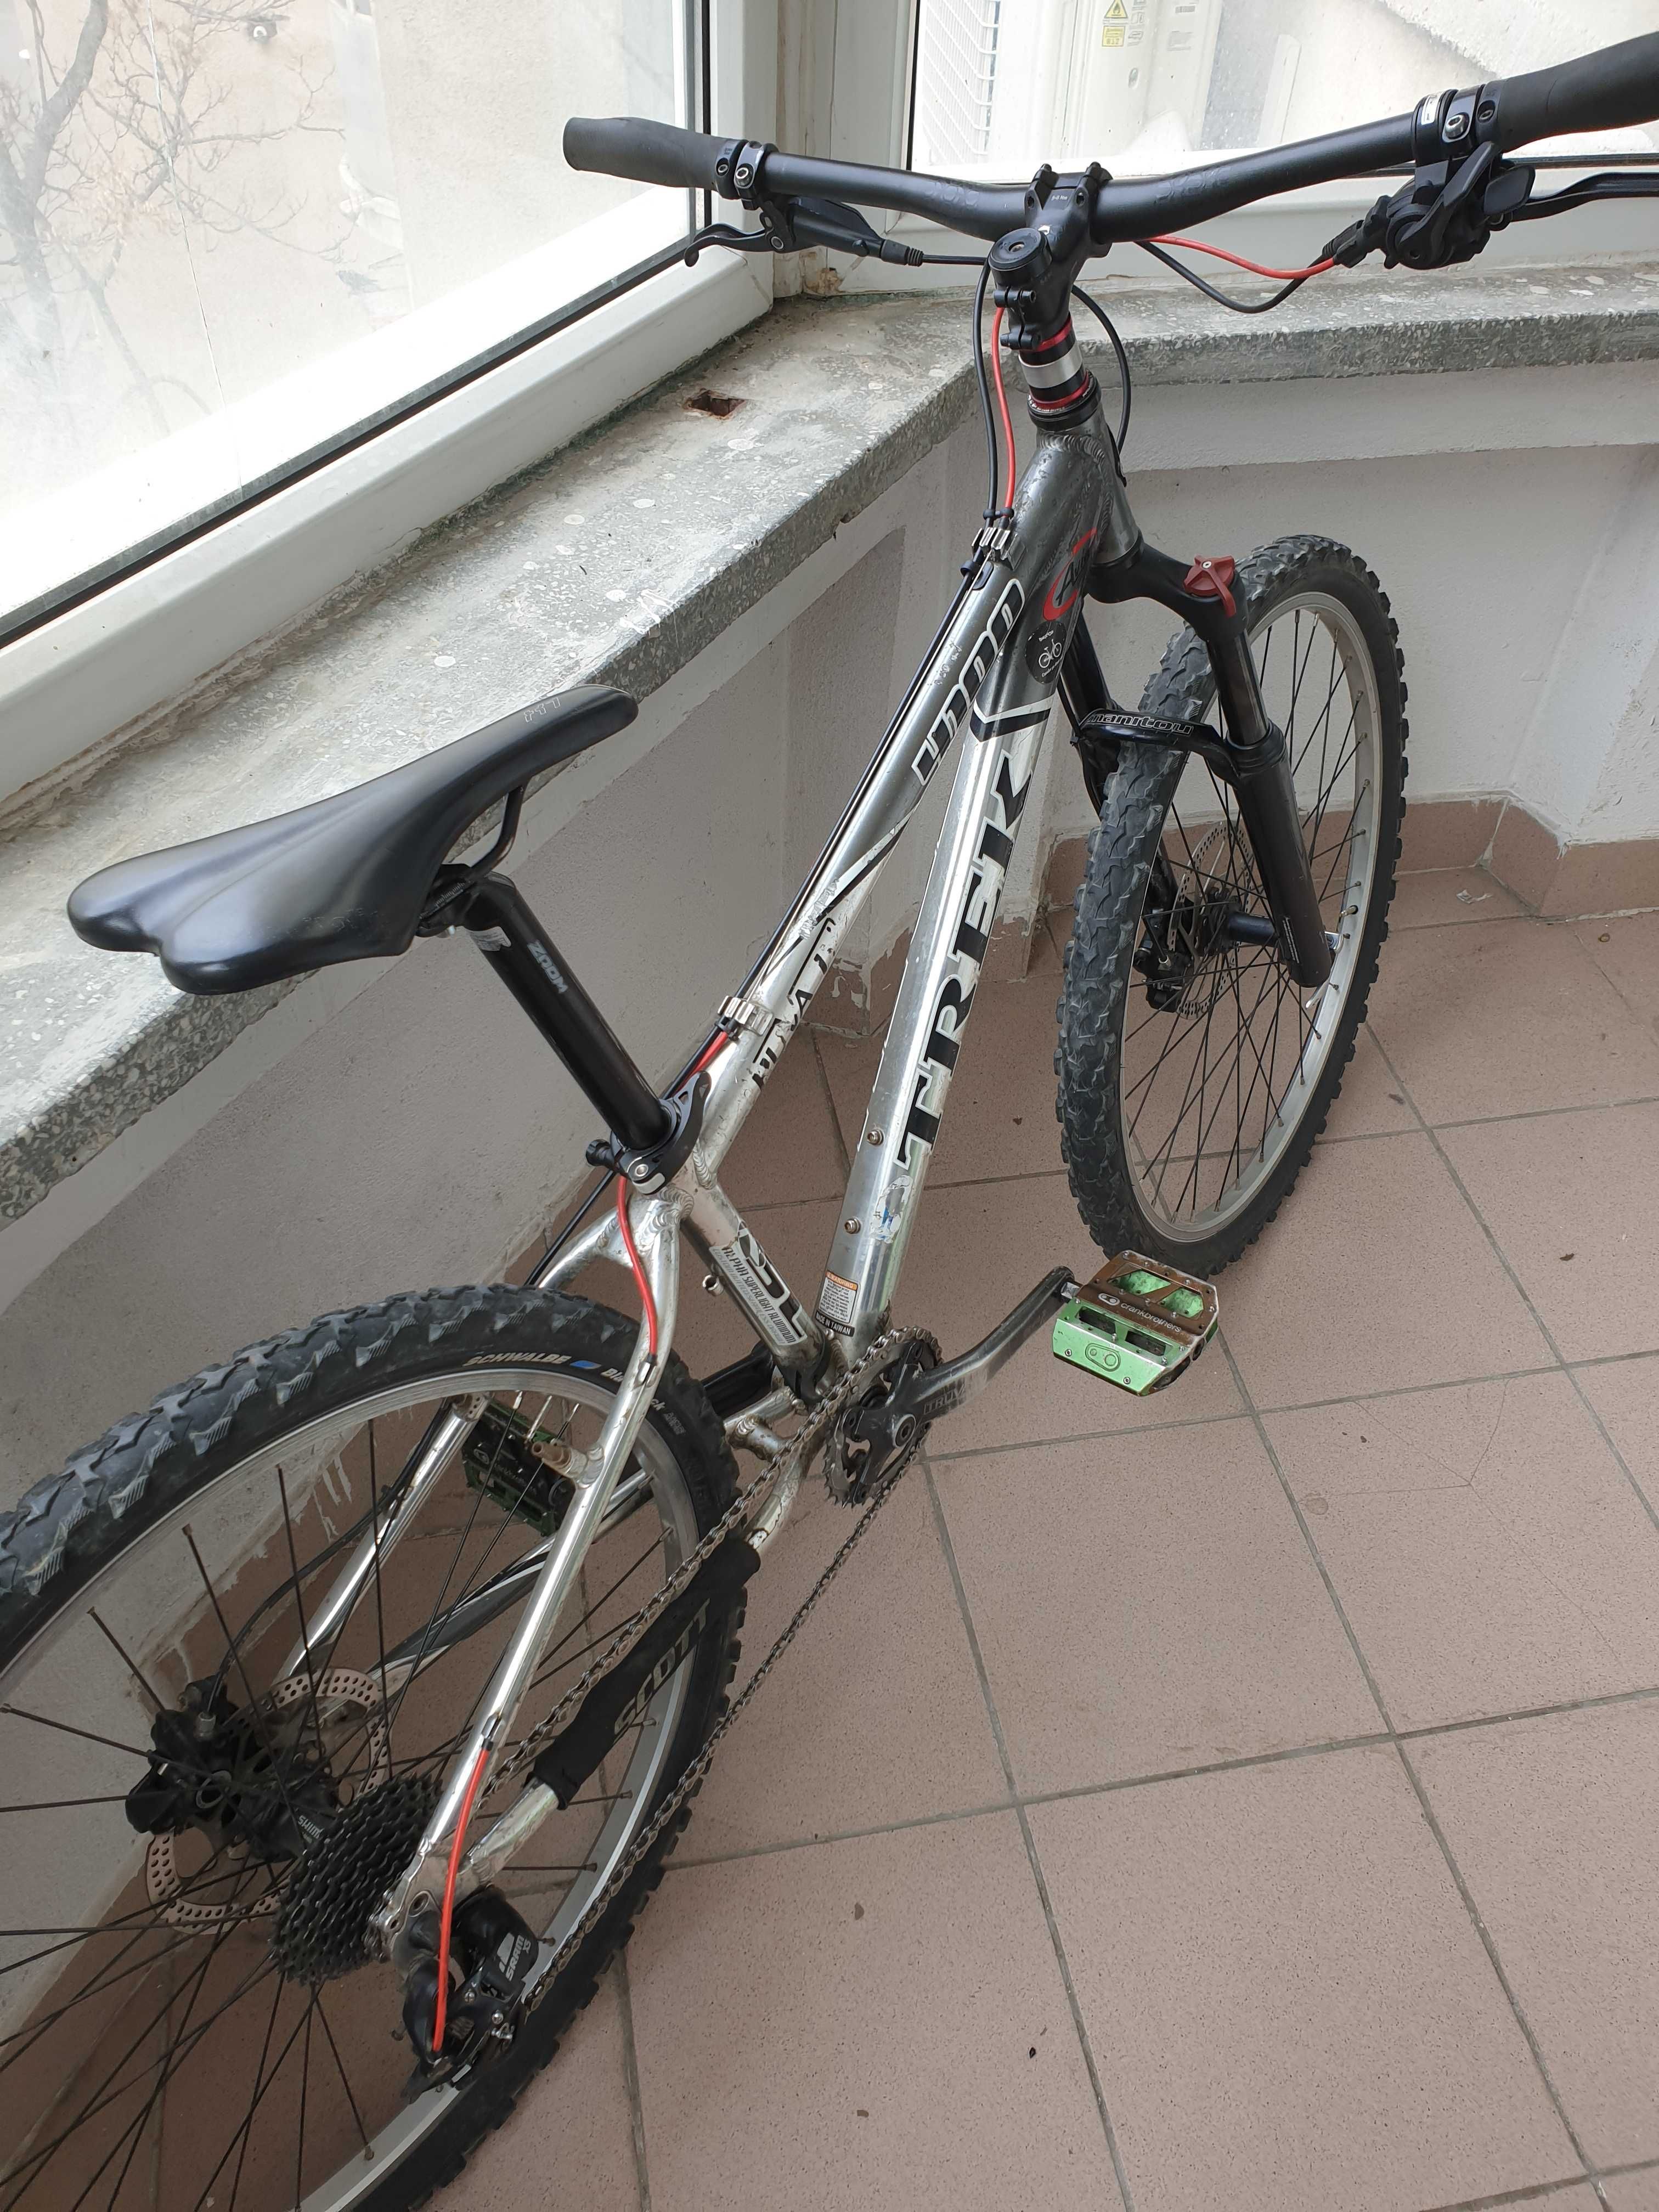 Bicicleta 26' Trek 4100 s Manitou